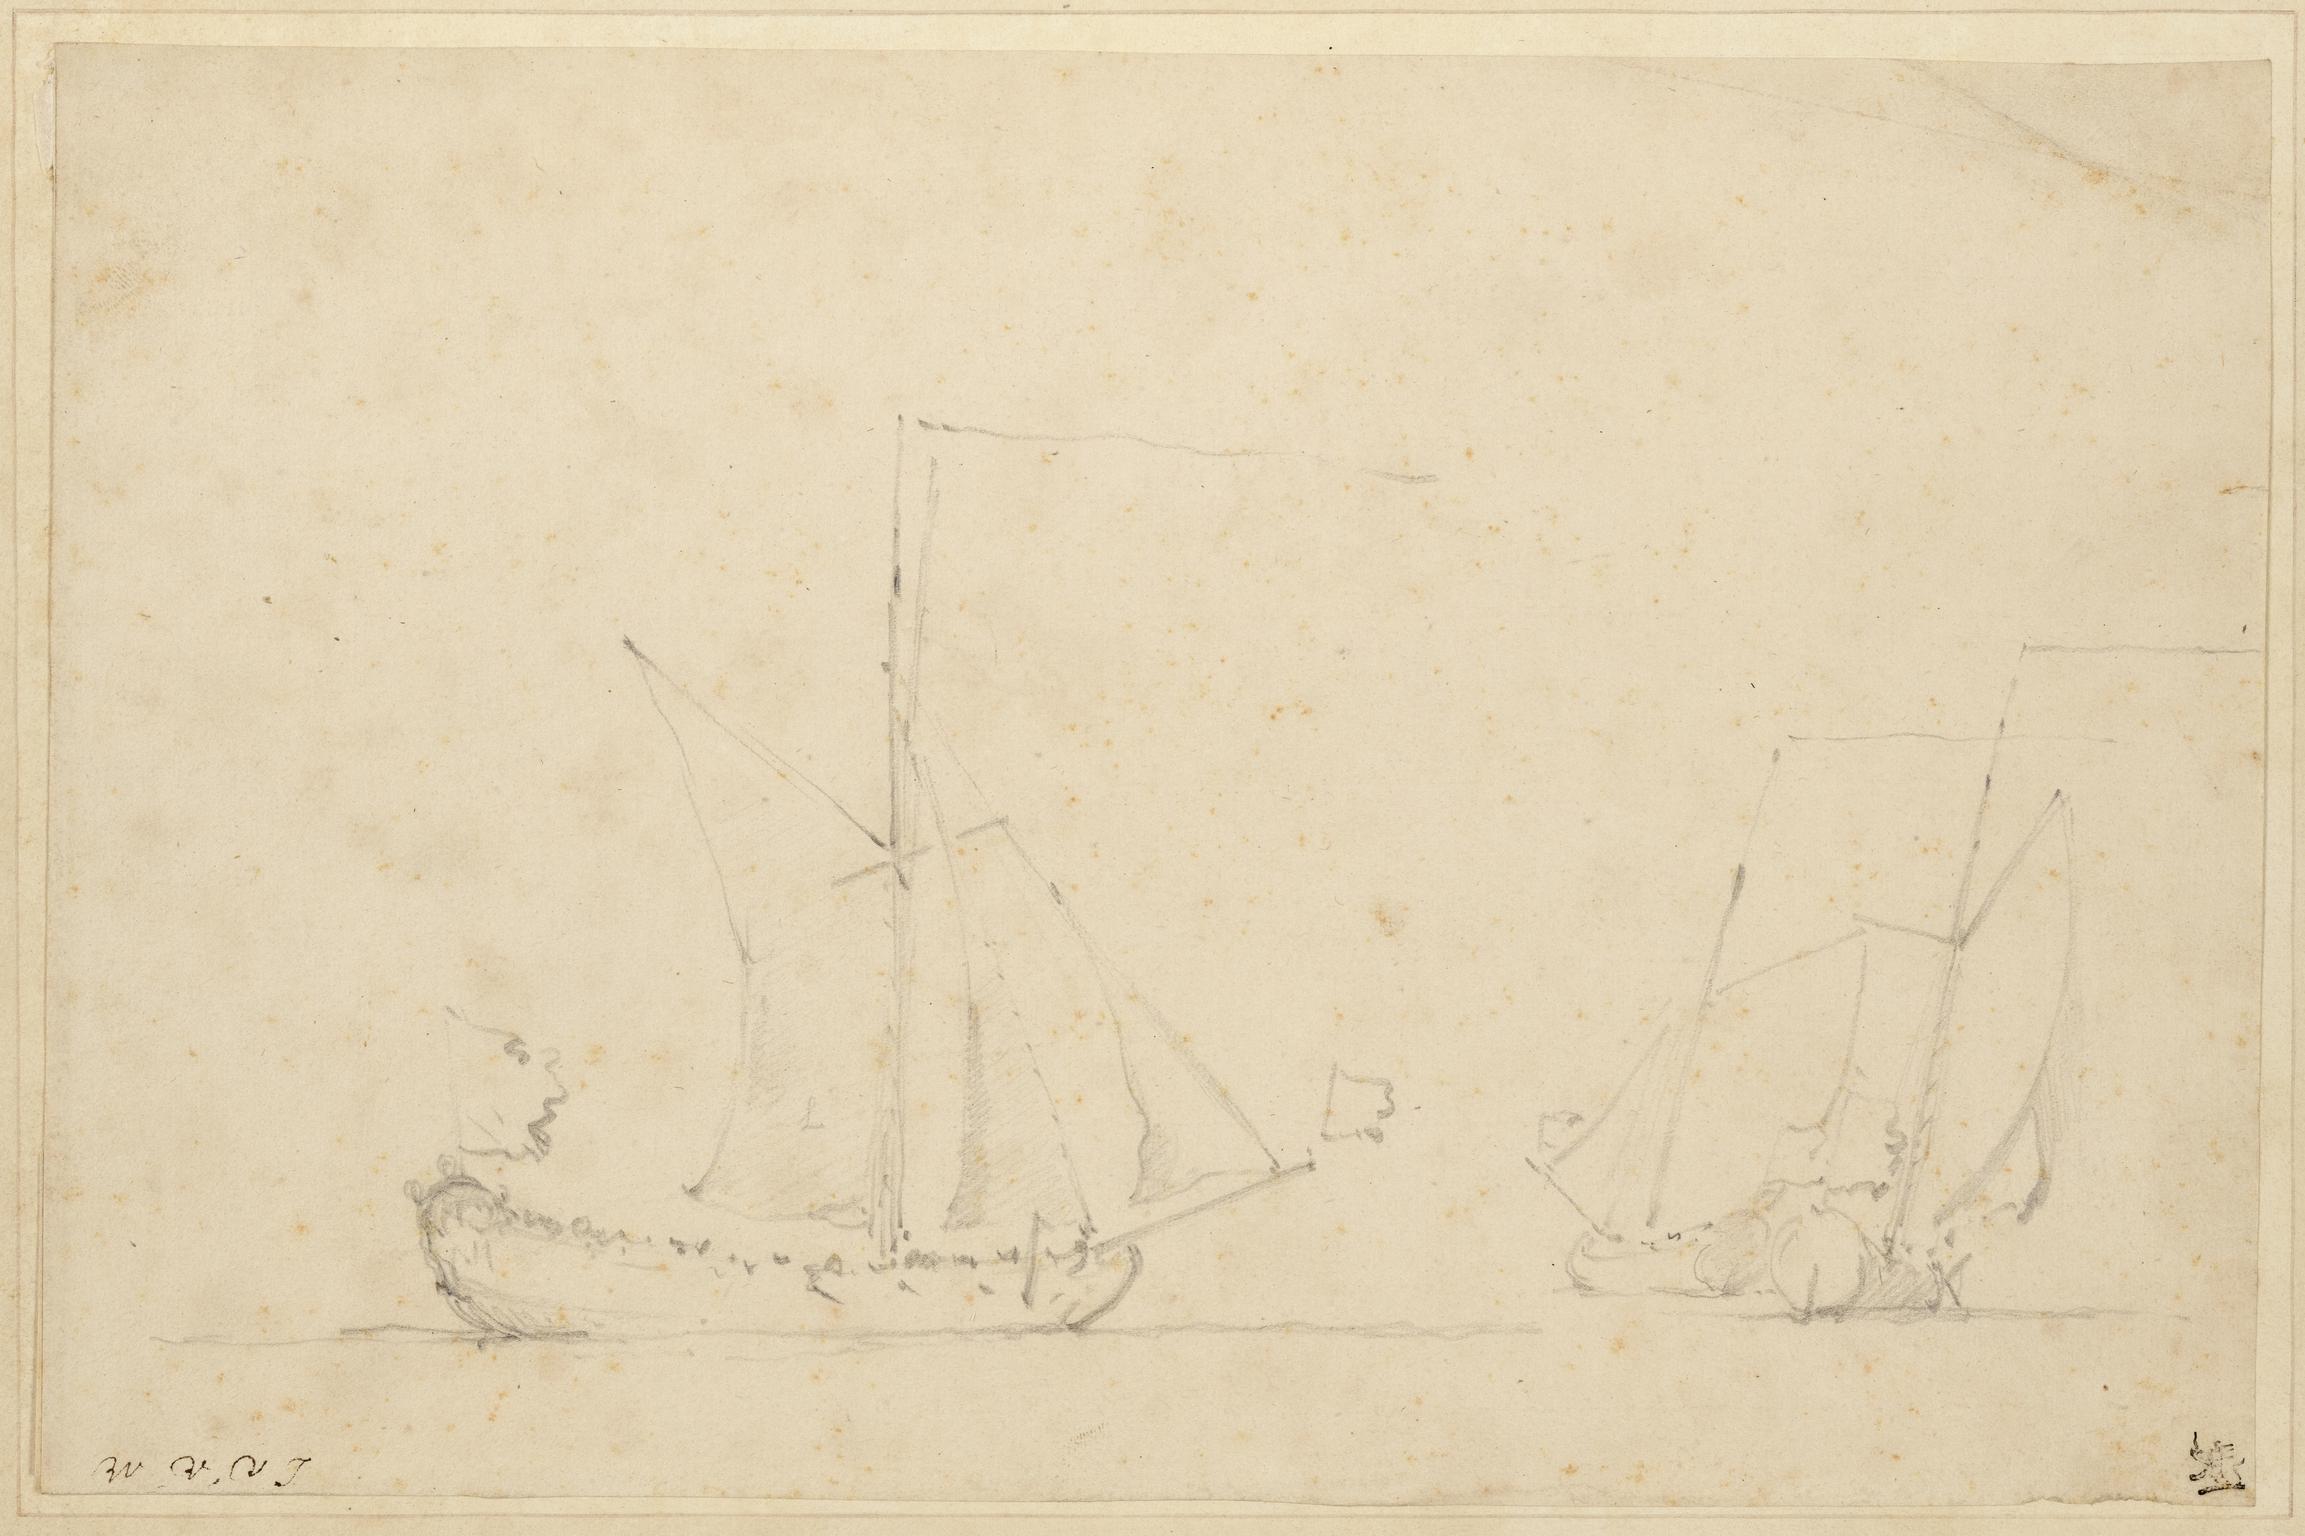 Sketch of Three Small Sloops at Sea